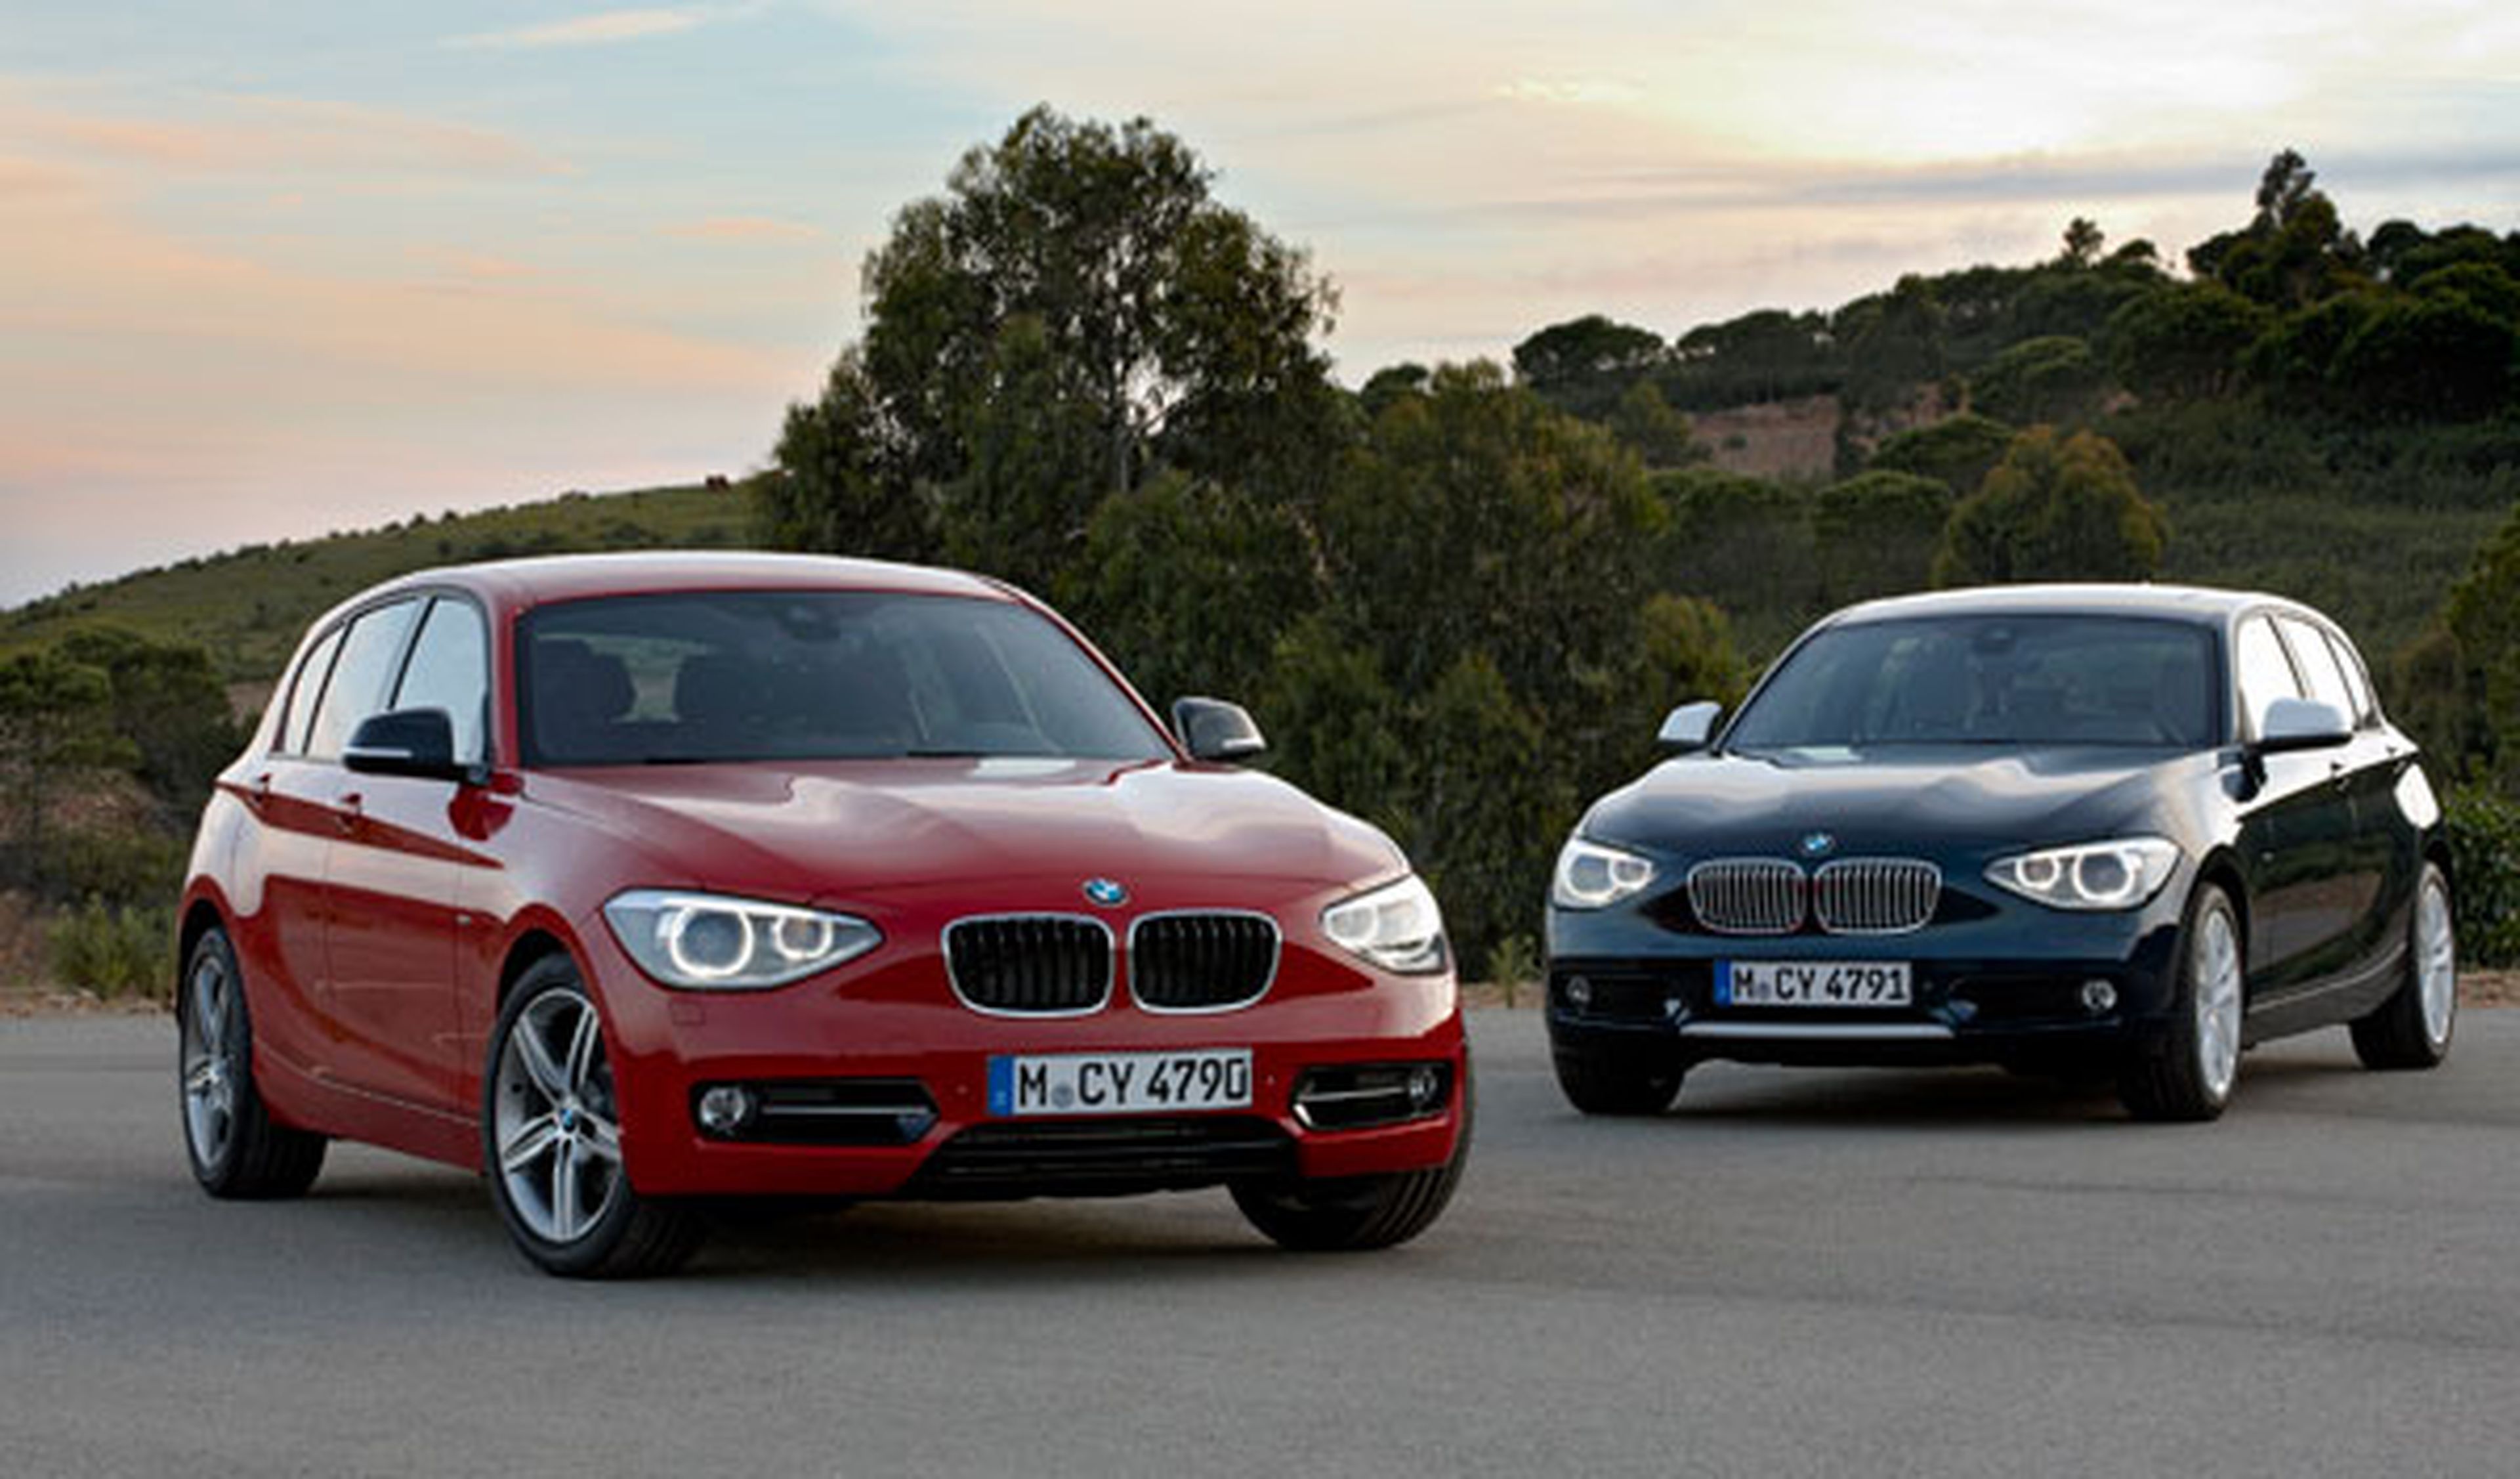 El nuevo BMW Serie 1 ya tiene precios: desde 25.950 euros